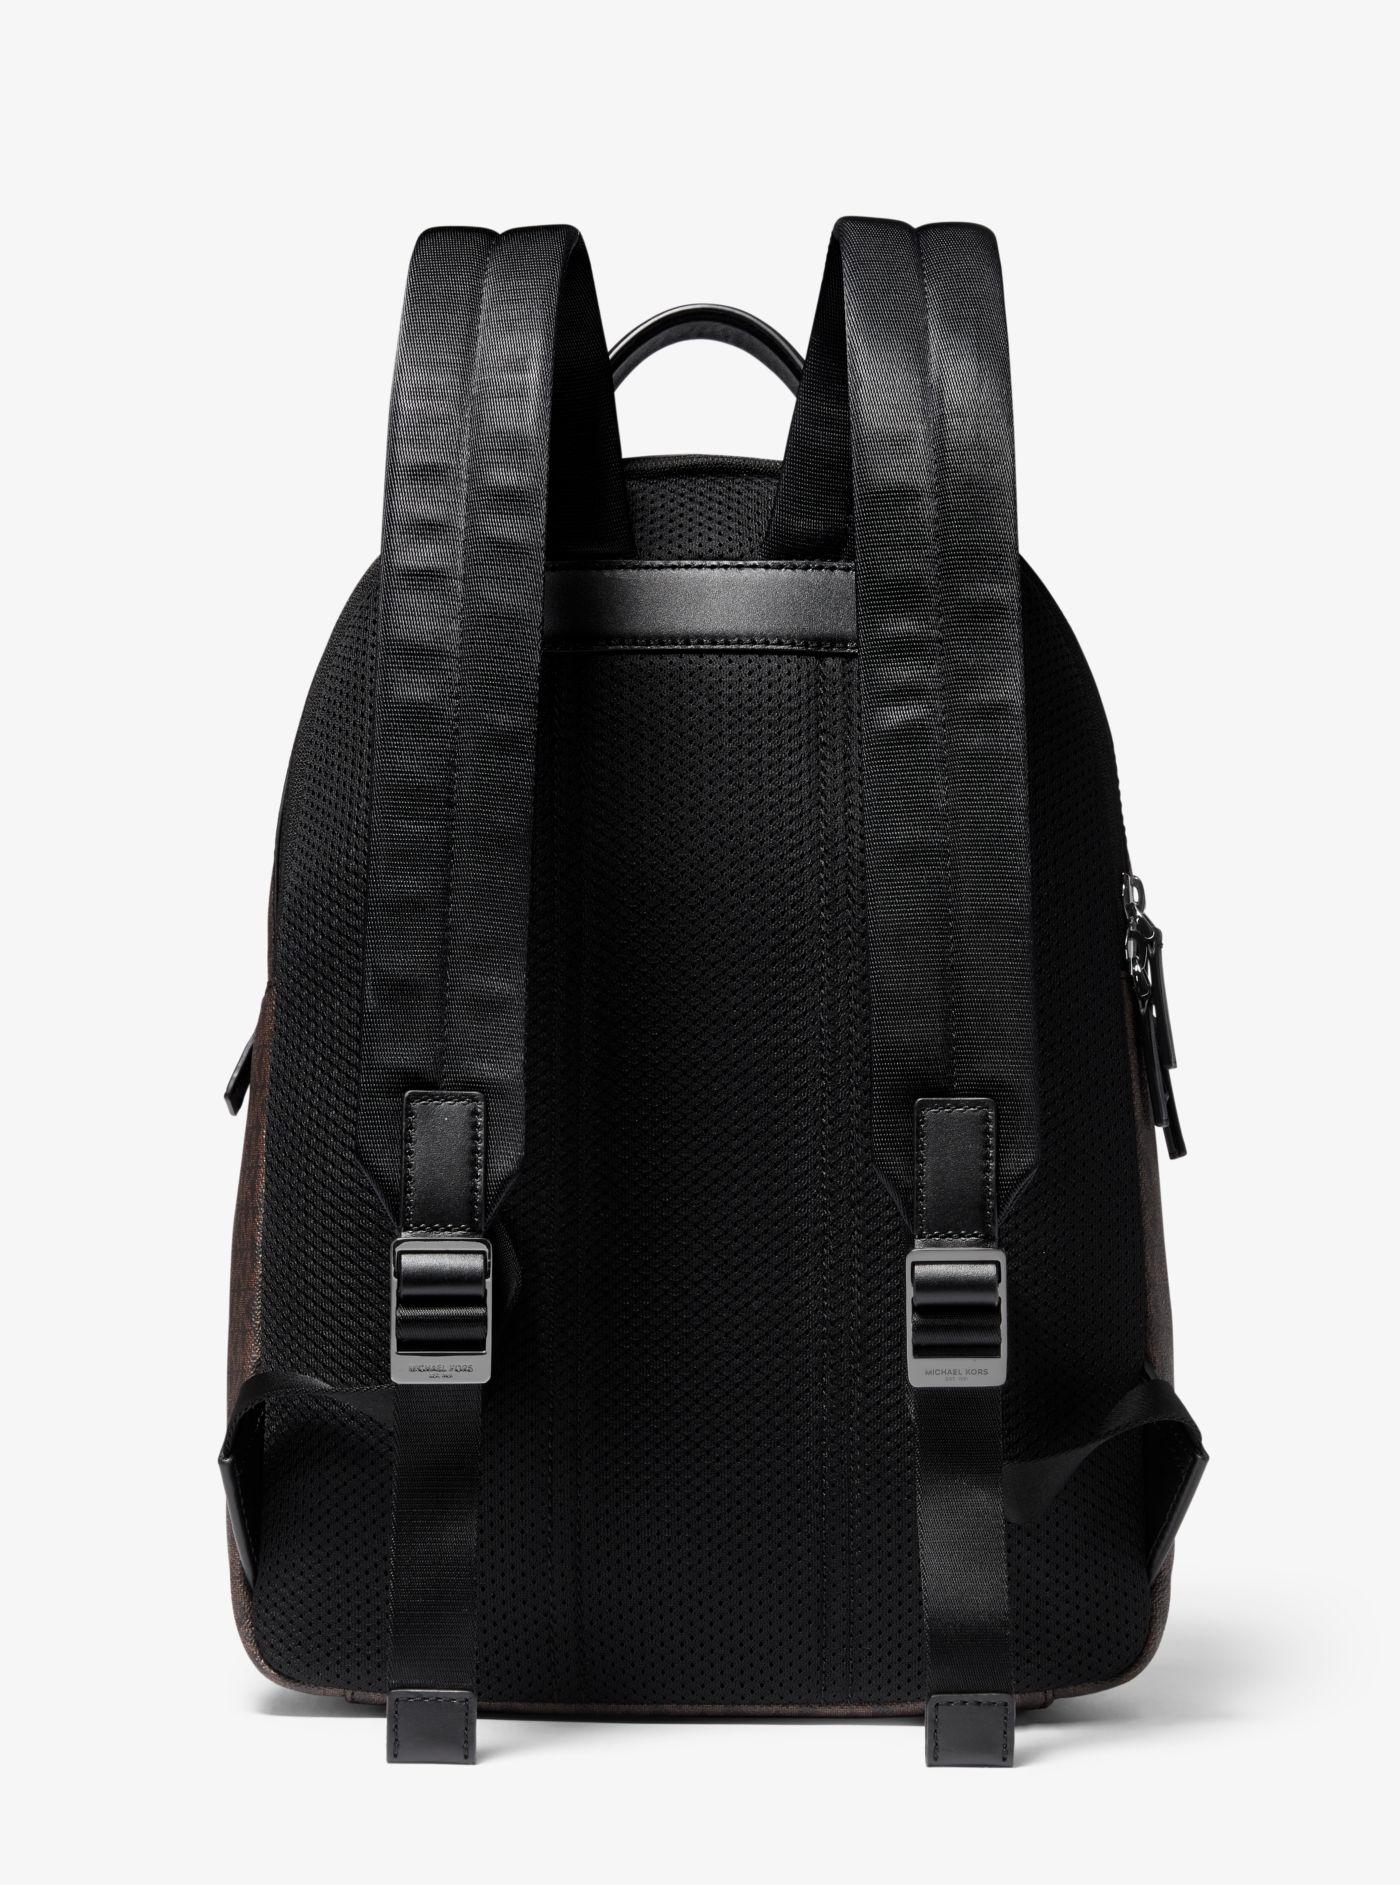 Michael Kors Greyson Logo Backpack in Black for Men | Lyst